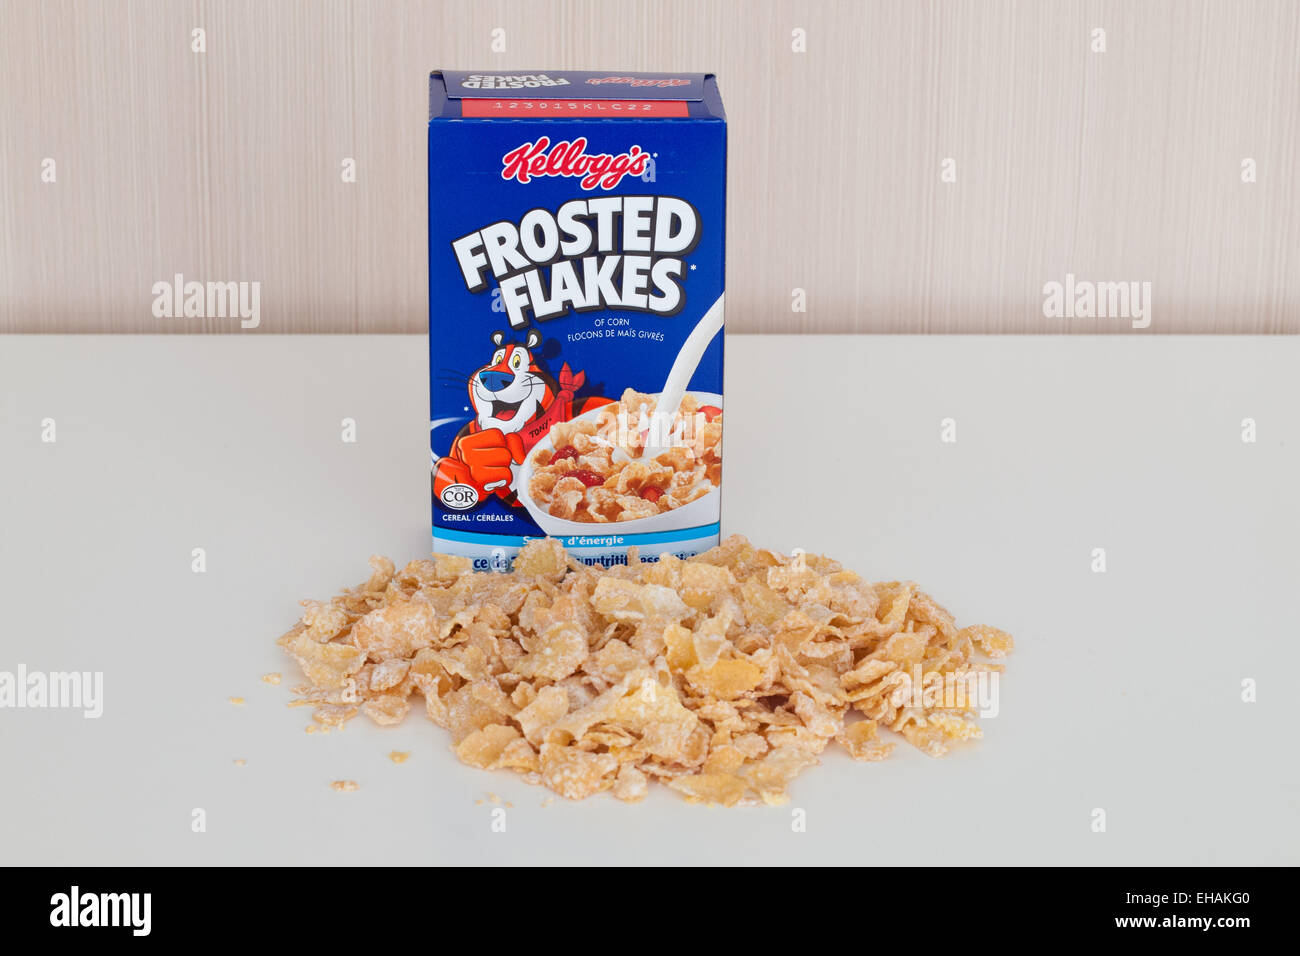 Frosted flakes immagini e fotografie stock ad alta risoluzione - Alamy